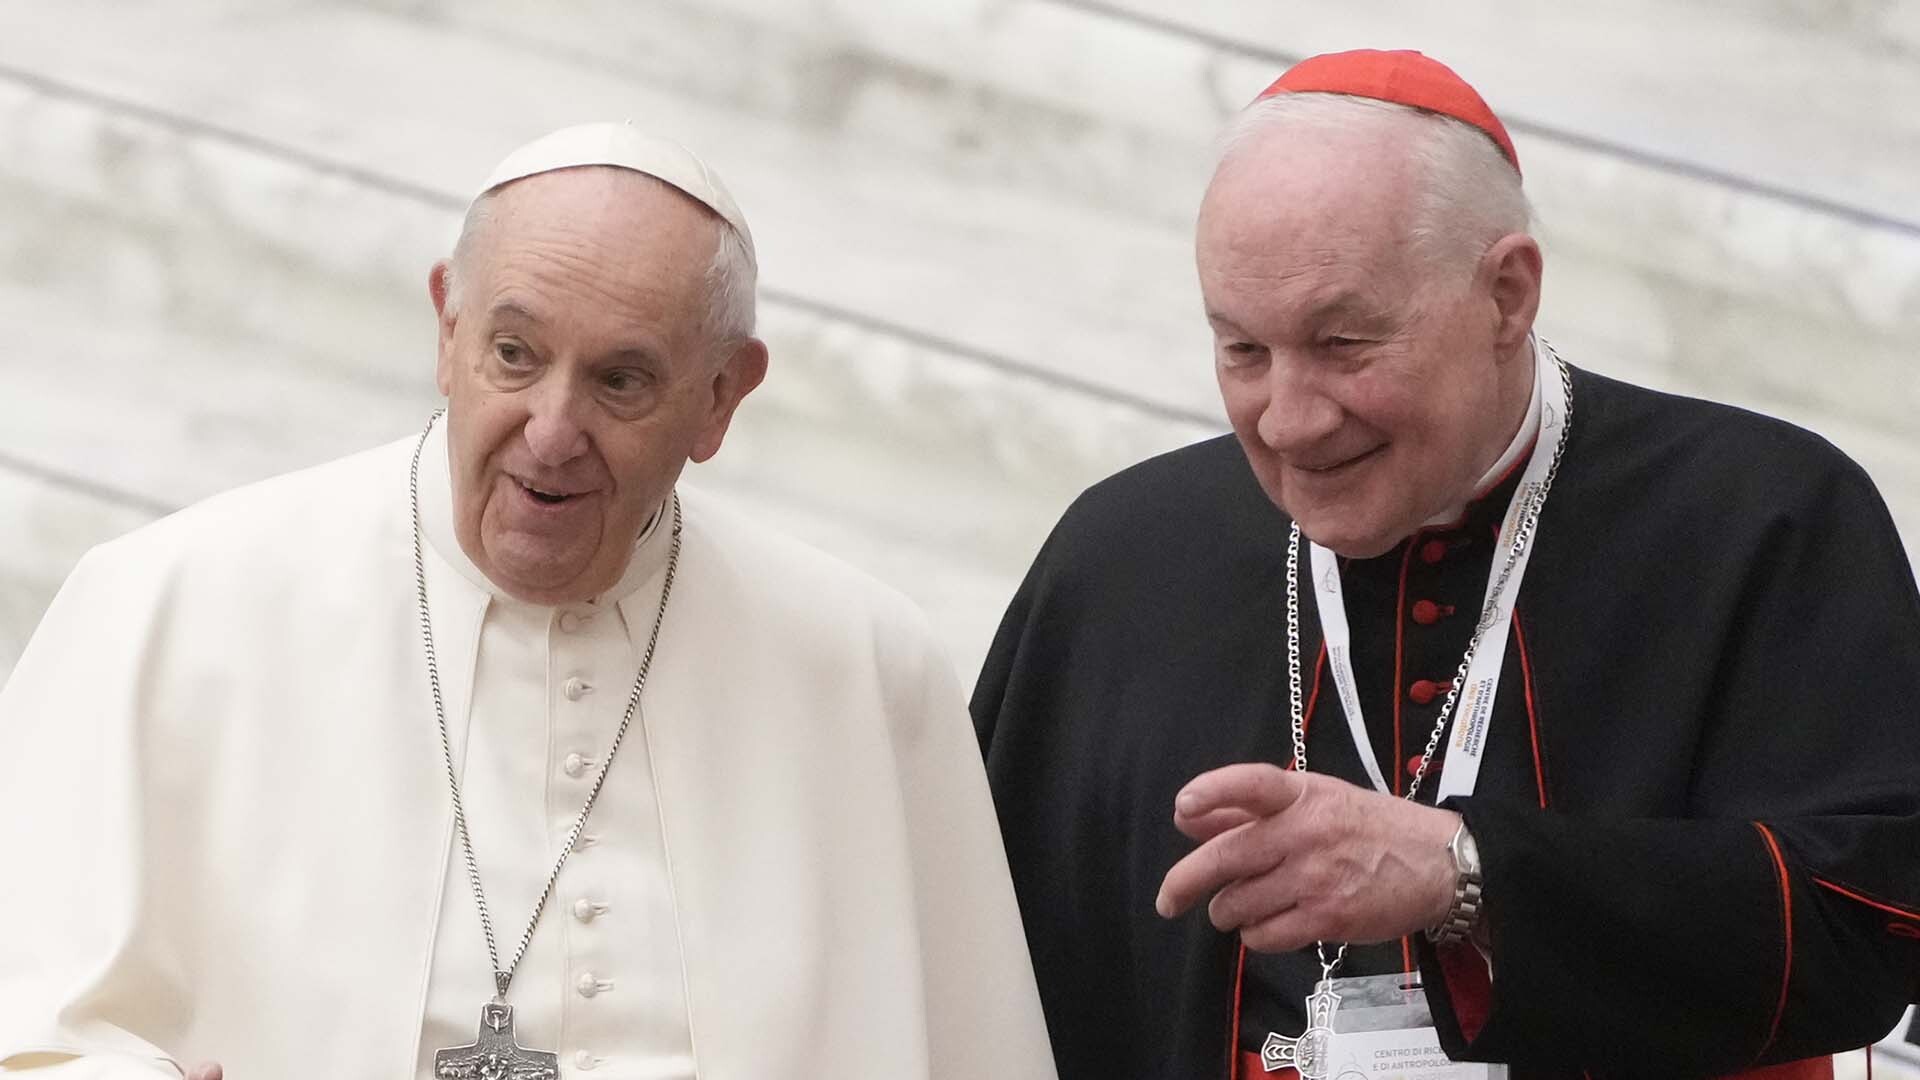 Le cardinal Marc Ouellet a annoncé mardi qu’il porterait plainte pour diffamation, affirmant que les allégations d’agressions sexuelles contre lui sont «infondées».